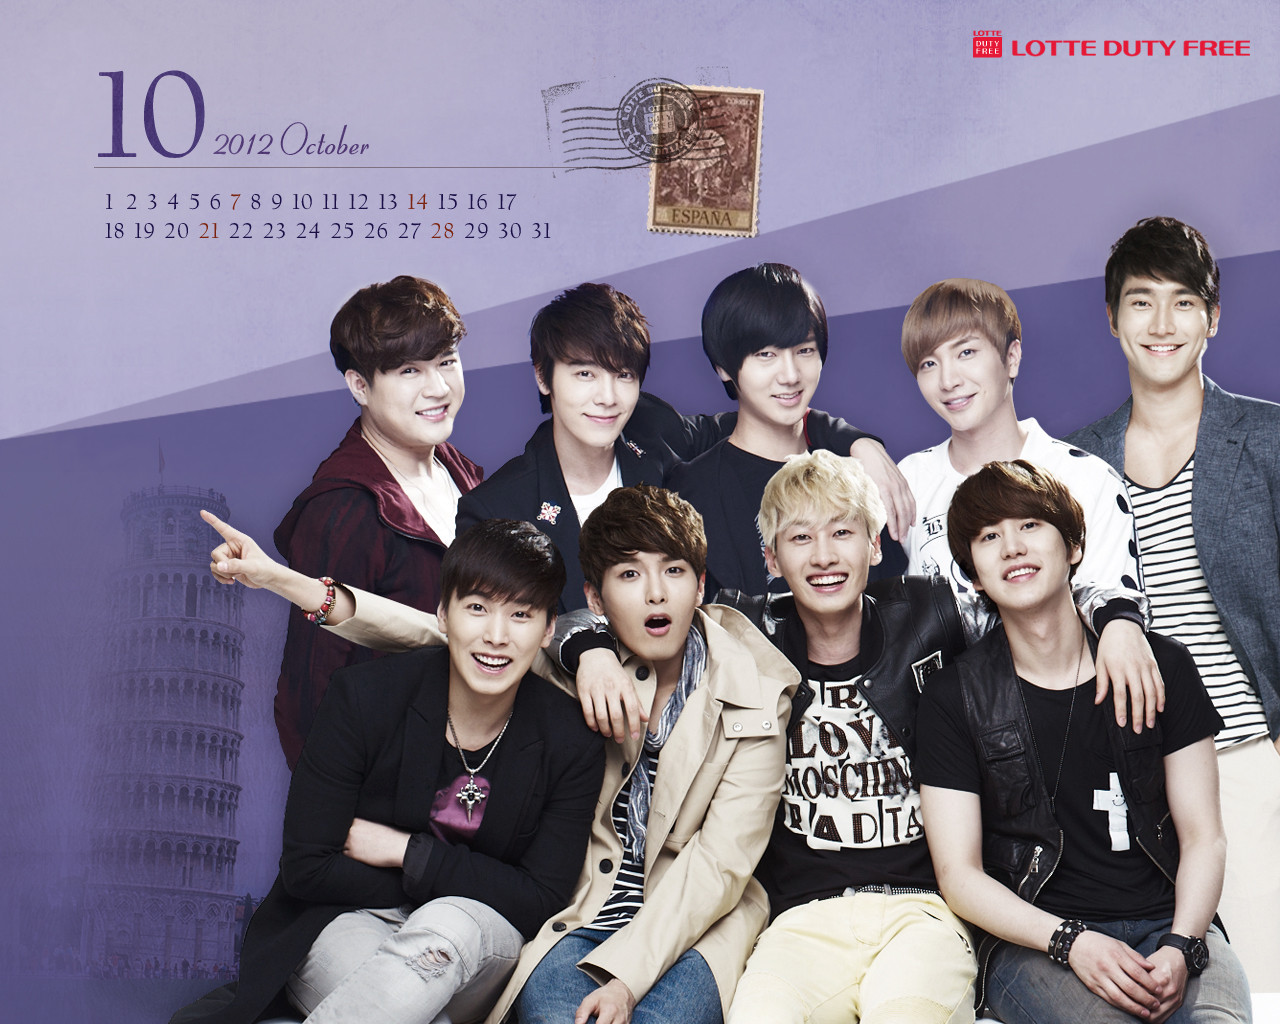 Kyuhyun Super Junior Wallpaper